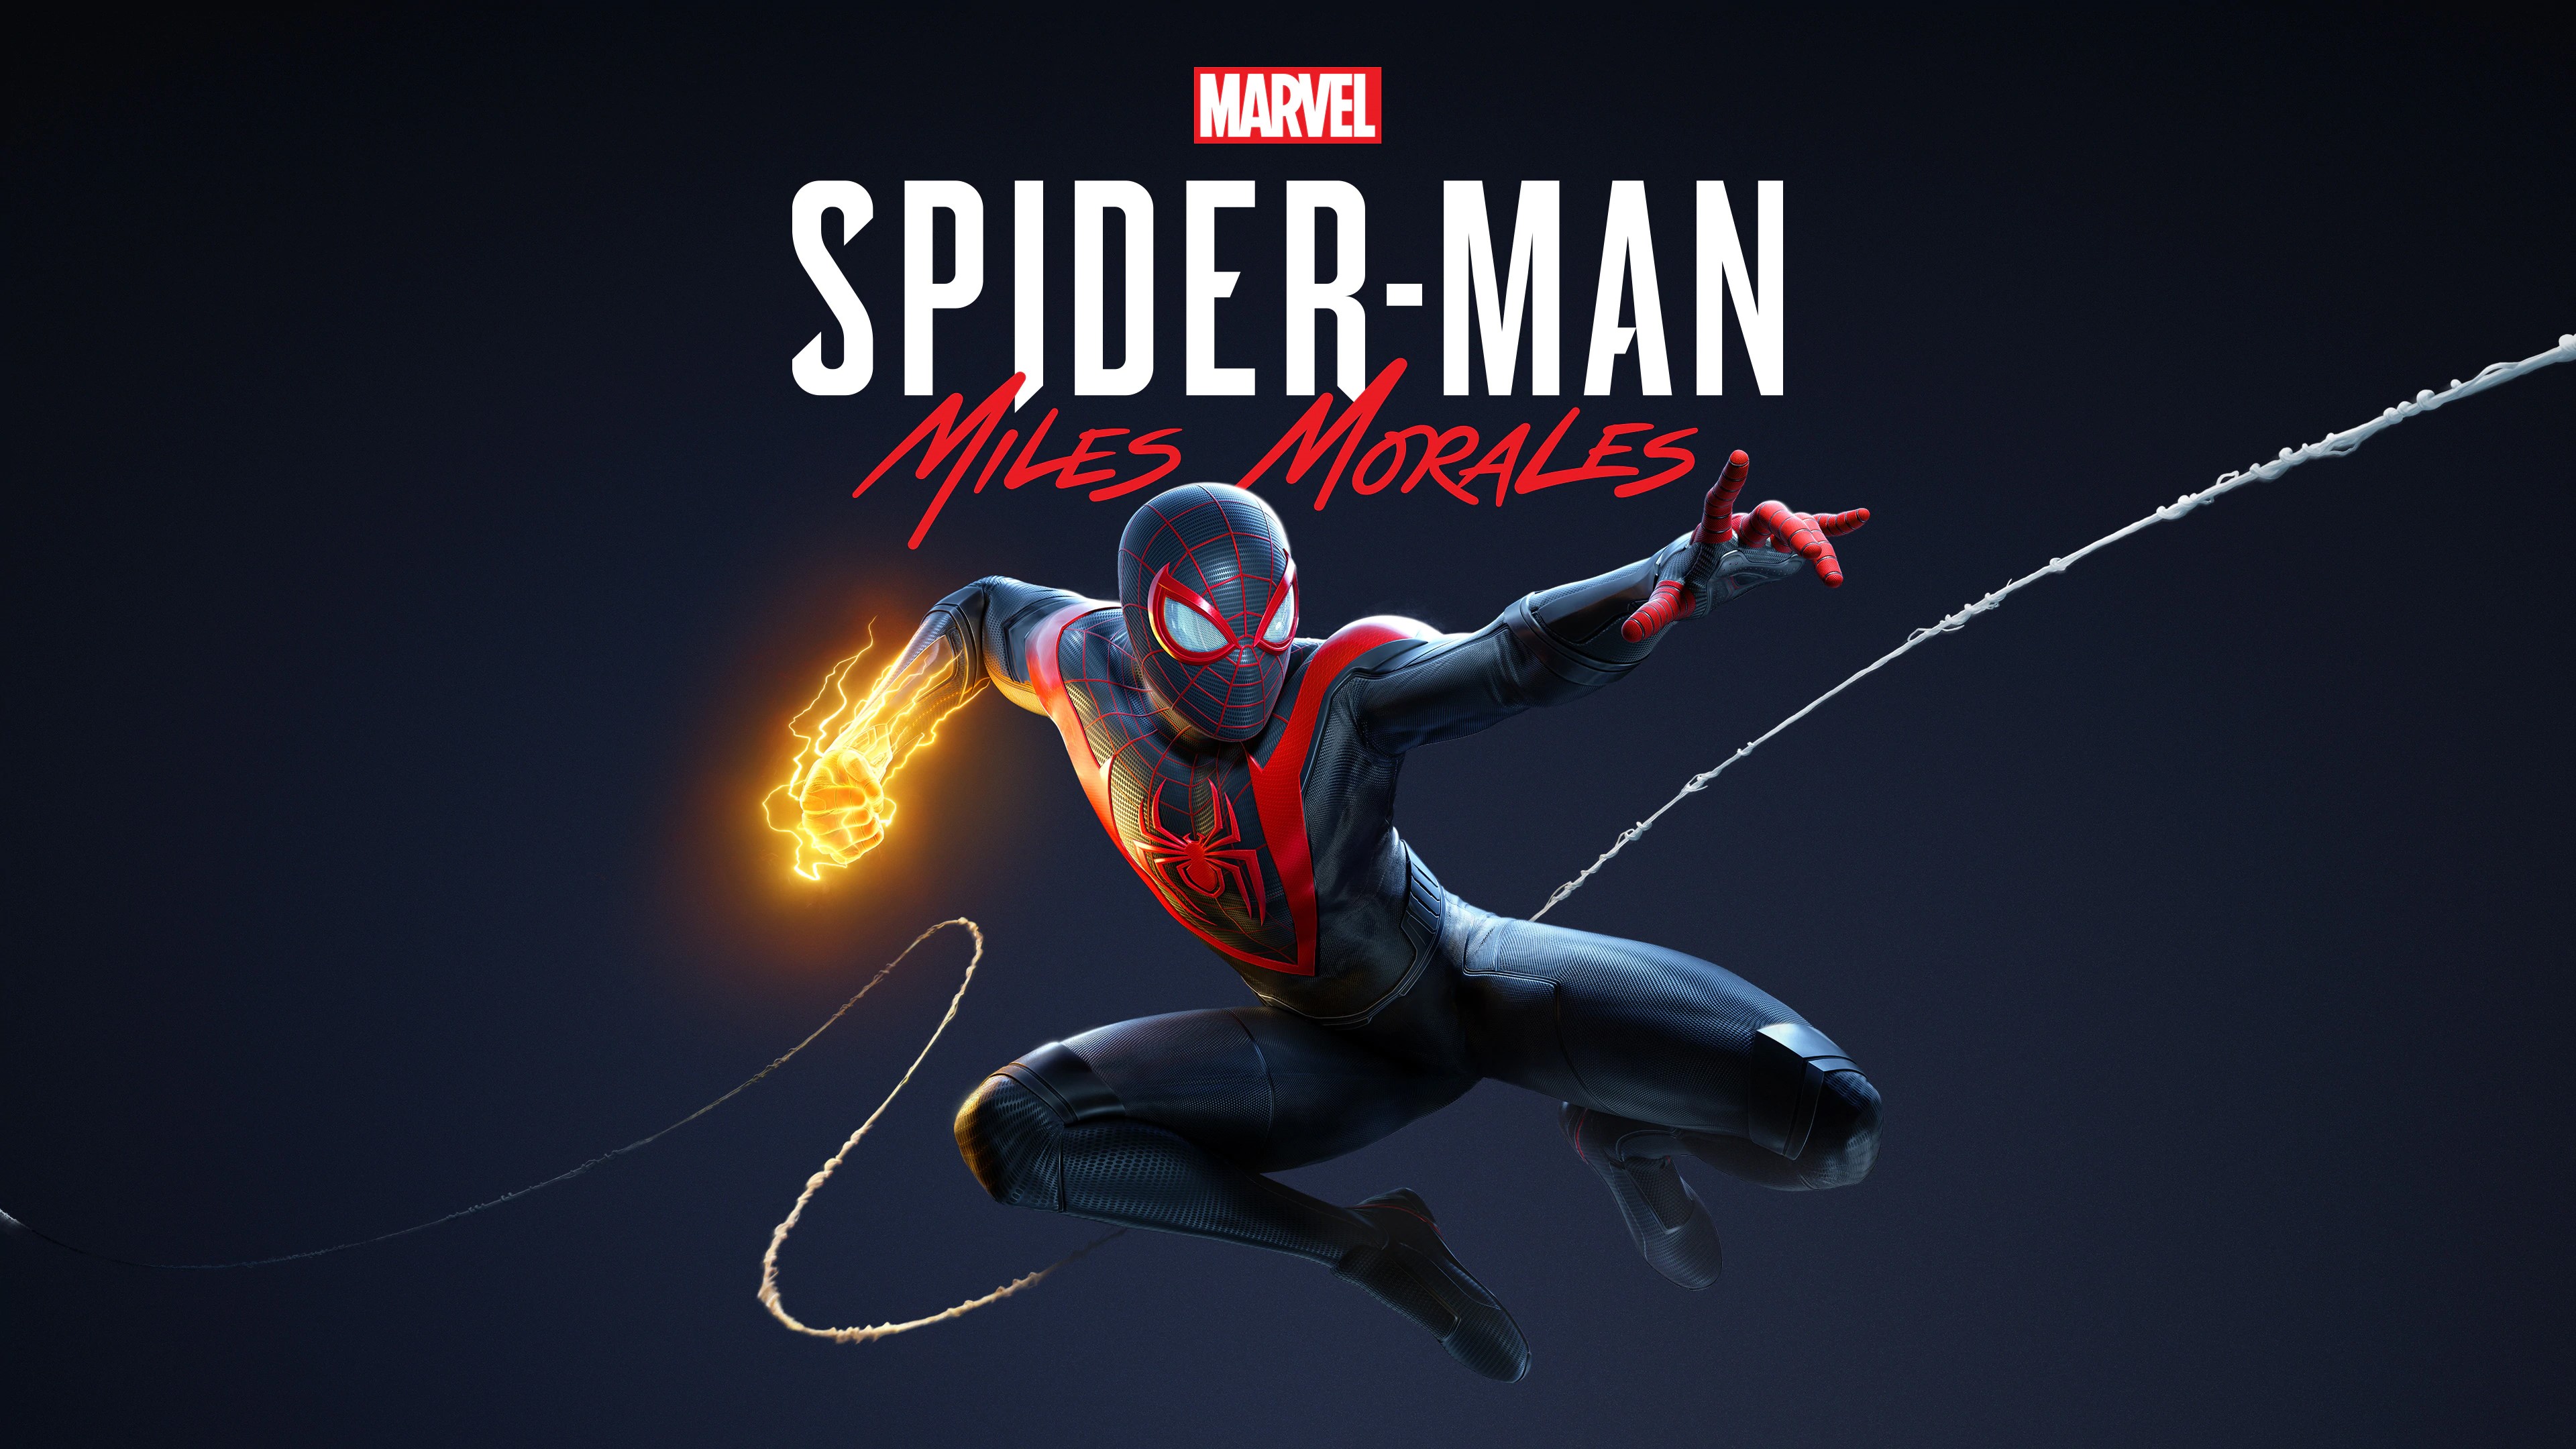 Marvel's Человек-паук /// Spider-Man: Miles Morales ( прохождение 14 )